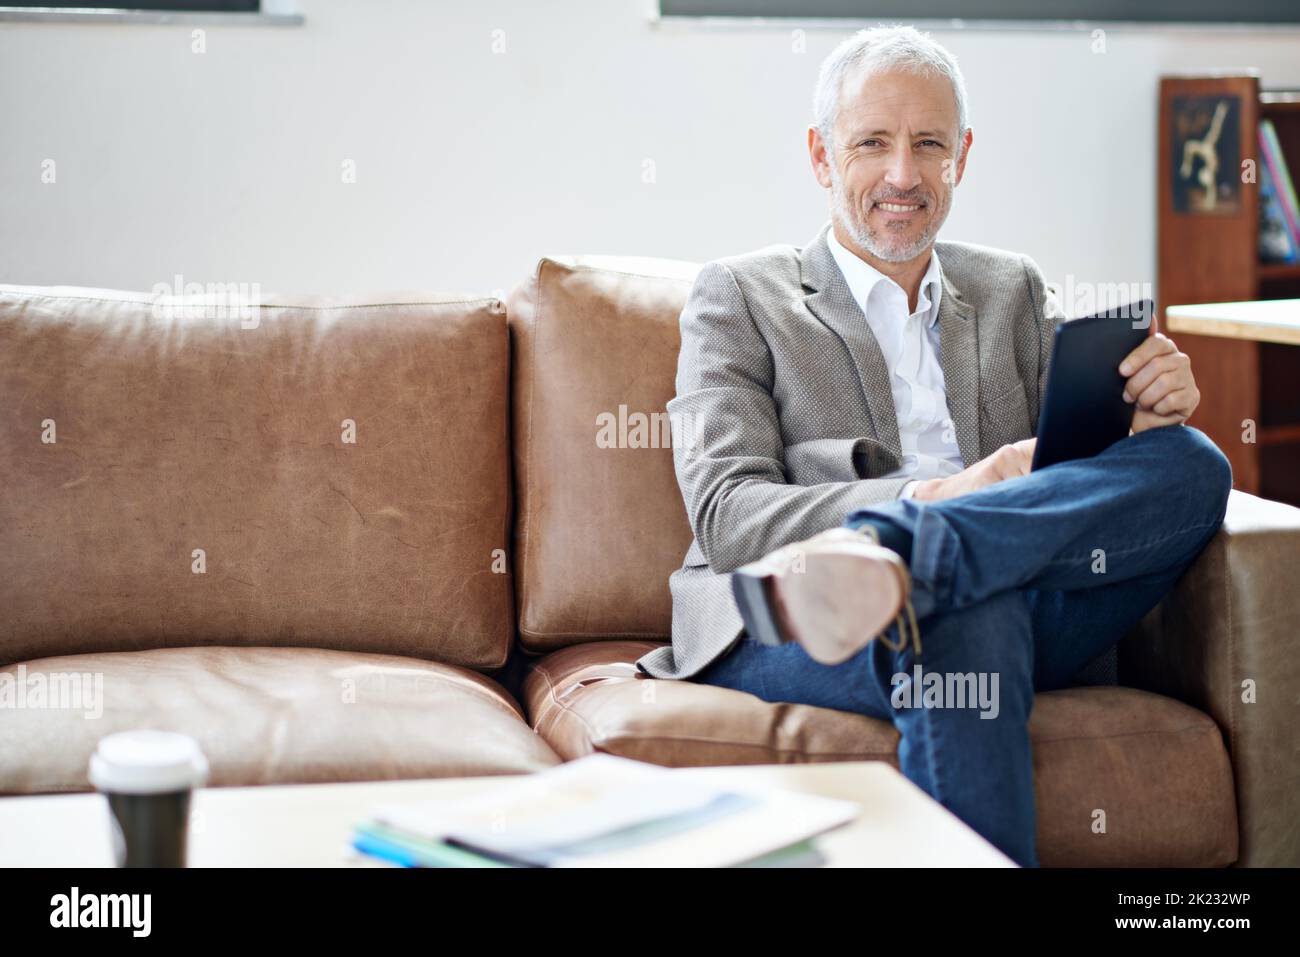 Temps de repos et de détente. Portrait d'un homme mûr se détendant avec sa tablette numérique dans son salon. Banque D'Images